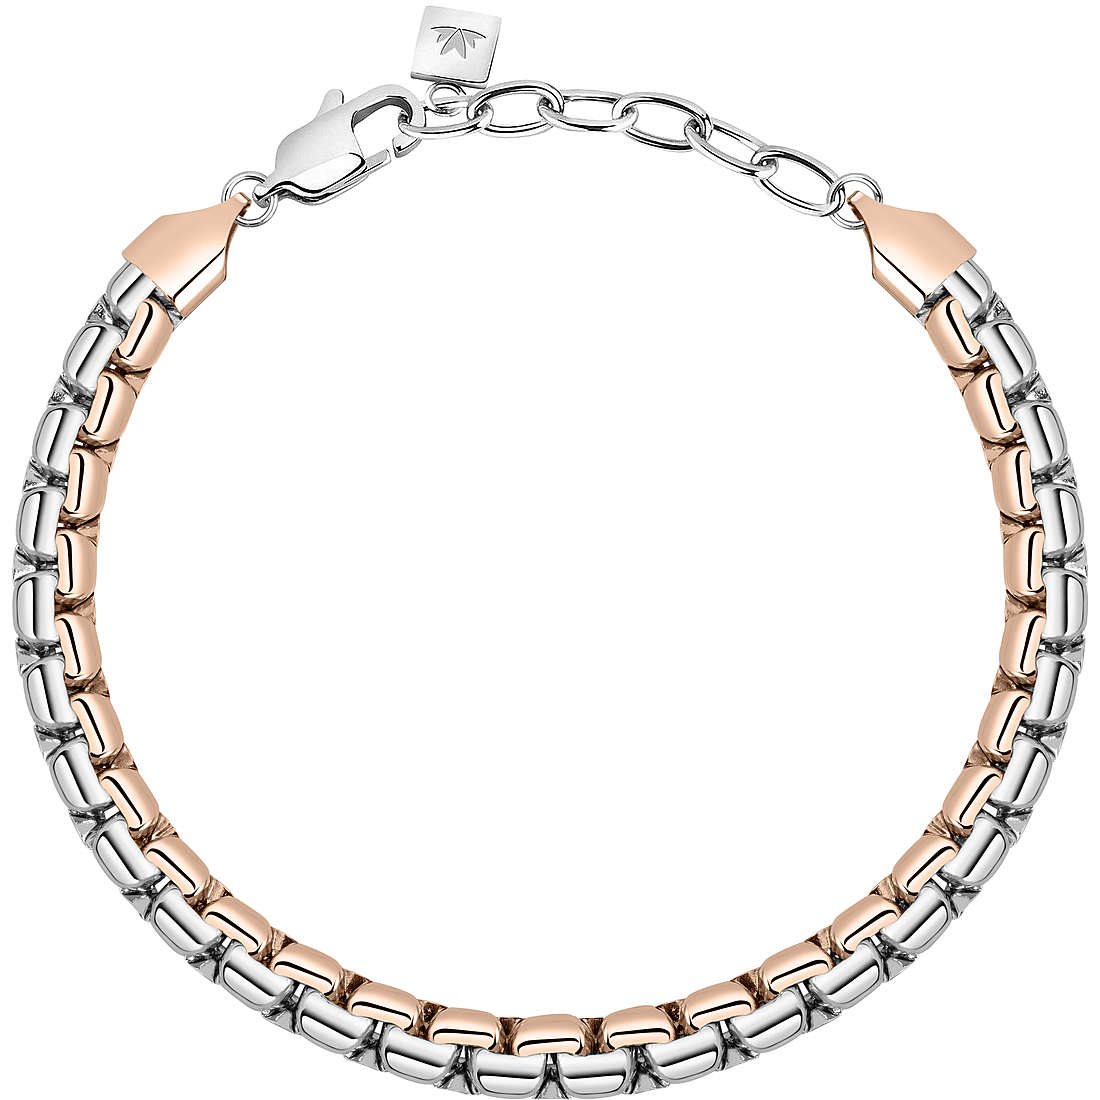 SL Bracelet Set – Harwell Designs